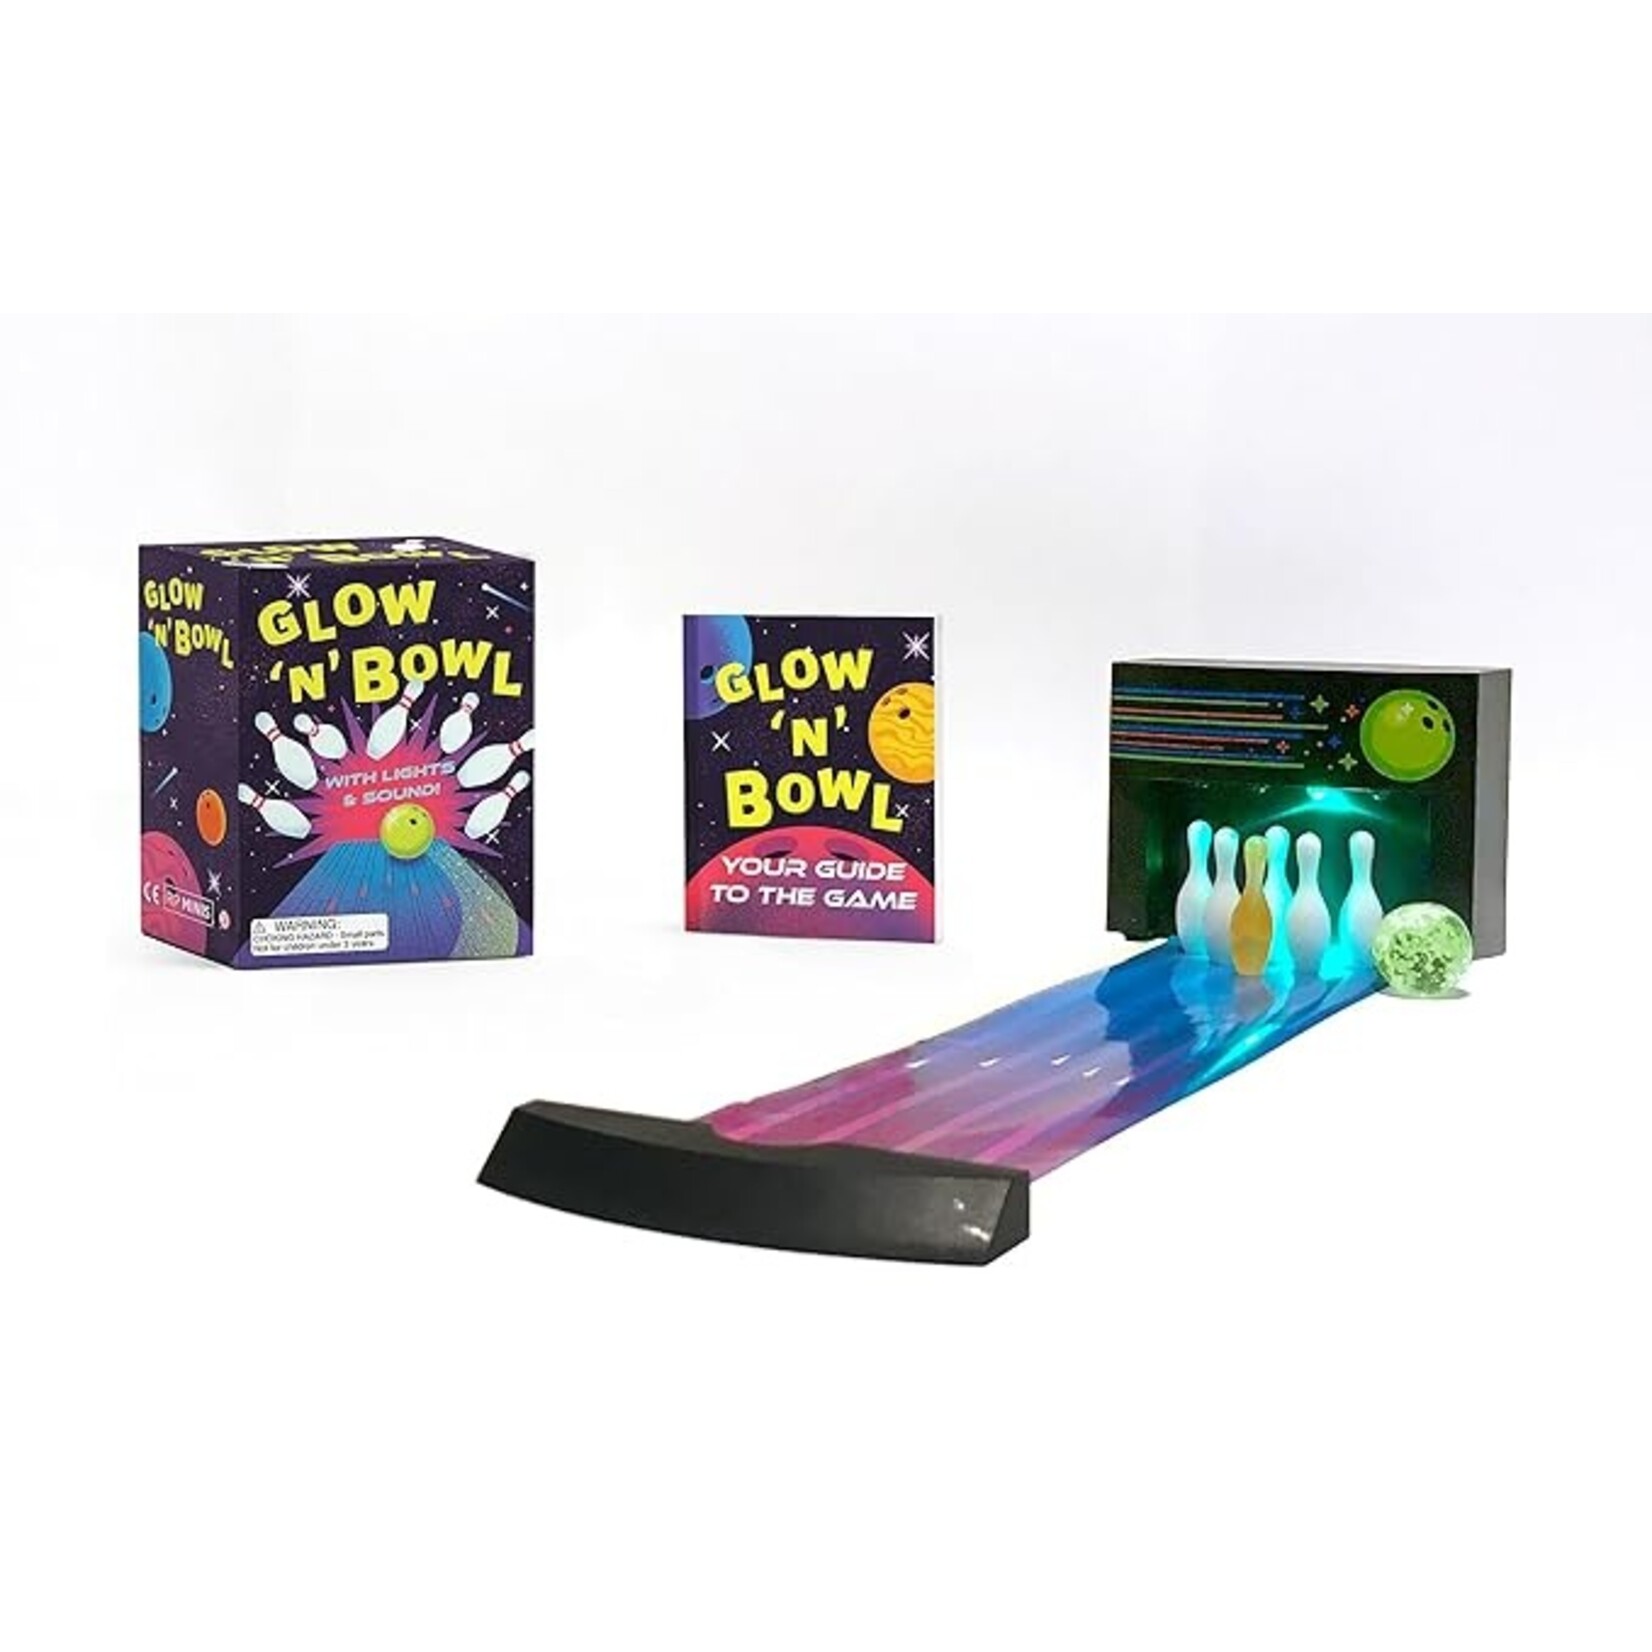 Glow & Bowl Desktop Game